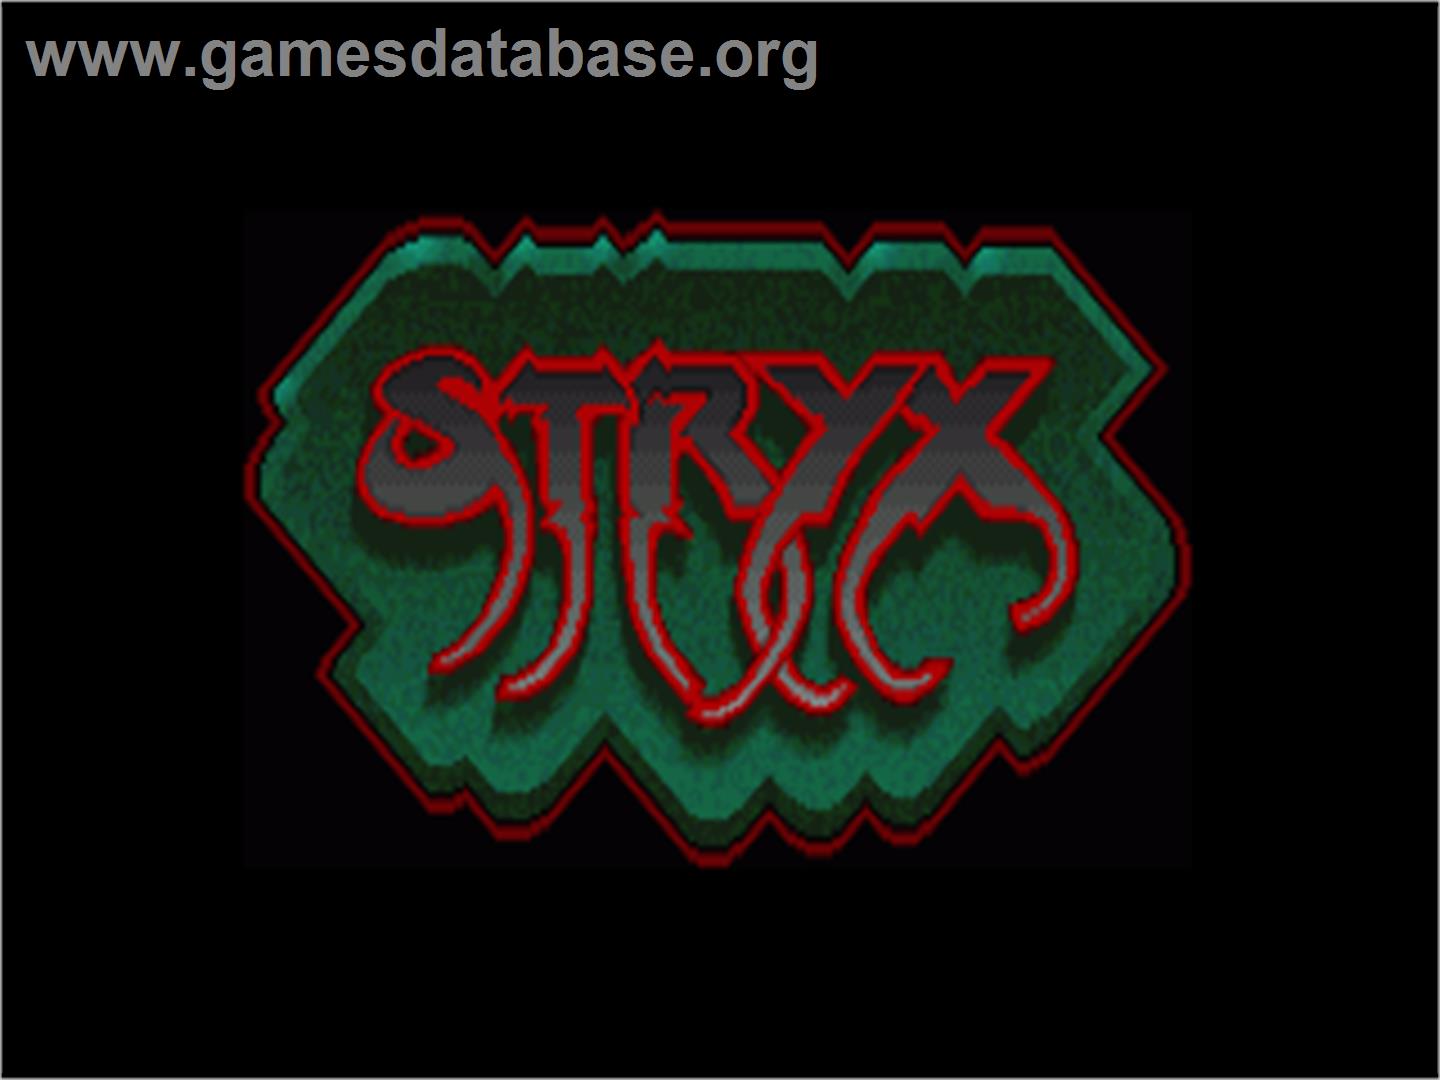 Stryx - Commodore Amiga - Artwork - Title Screen